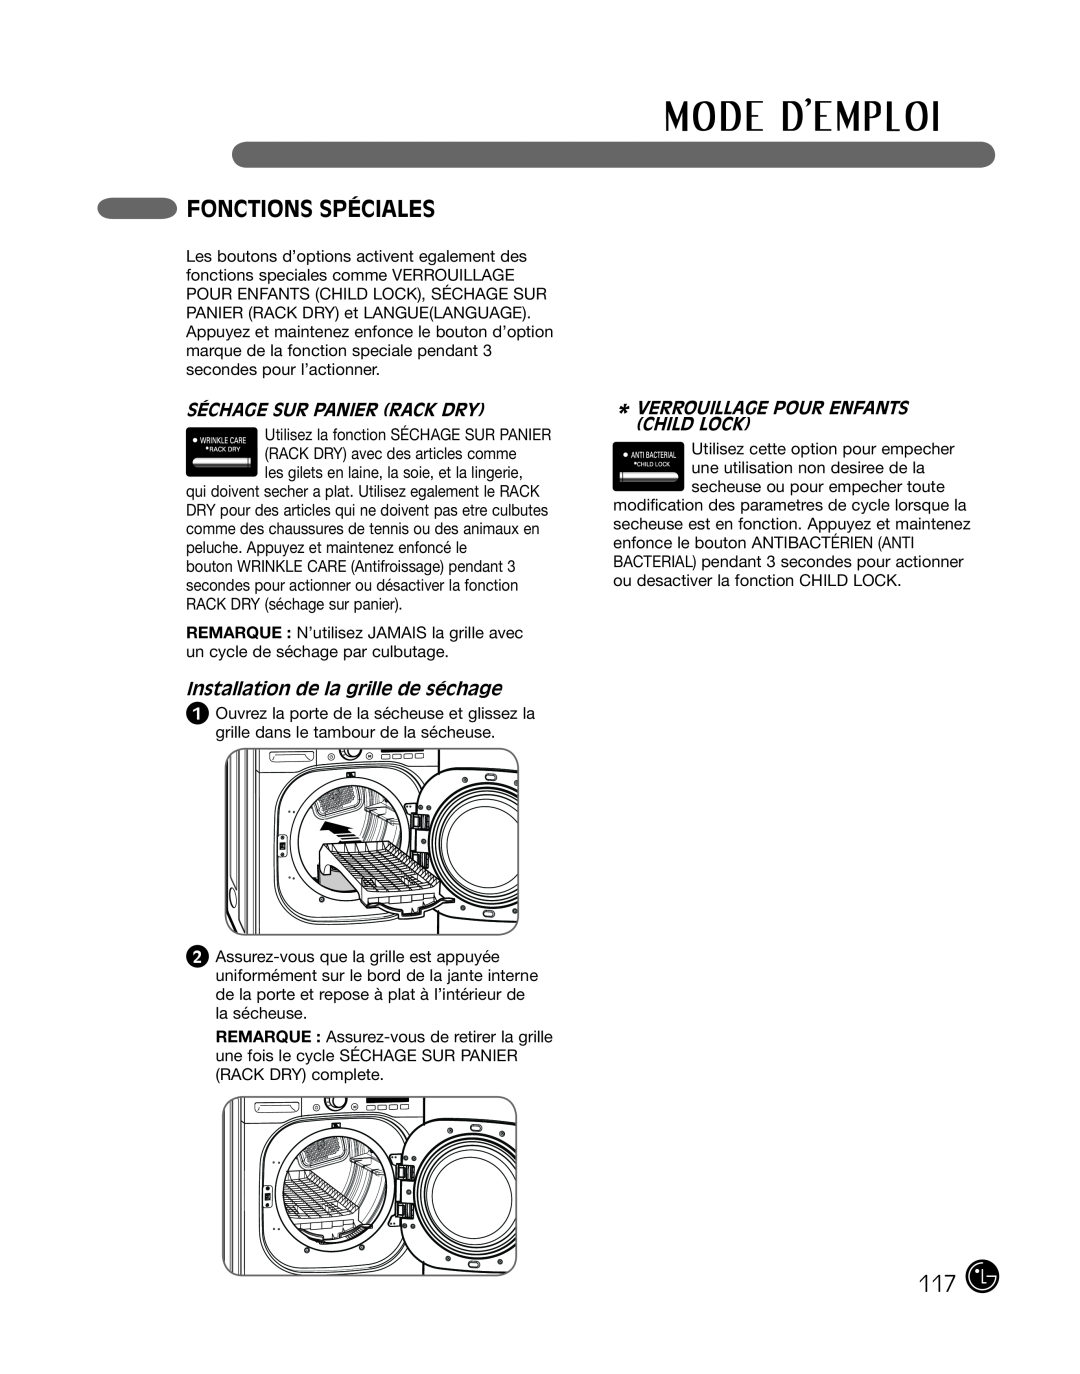 LG Electronics P154 manual Fonctions Spéciales, Séchage Sur Panier Rack Dry, Installation de la grille de séchage 